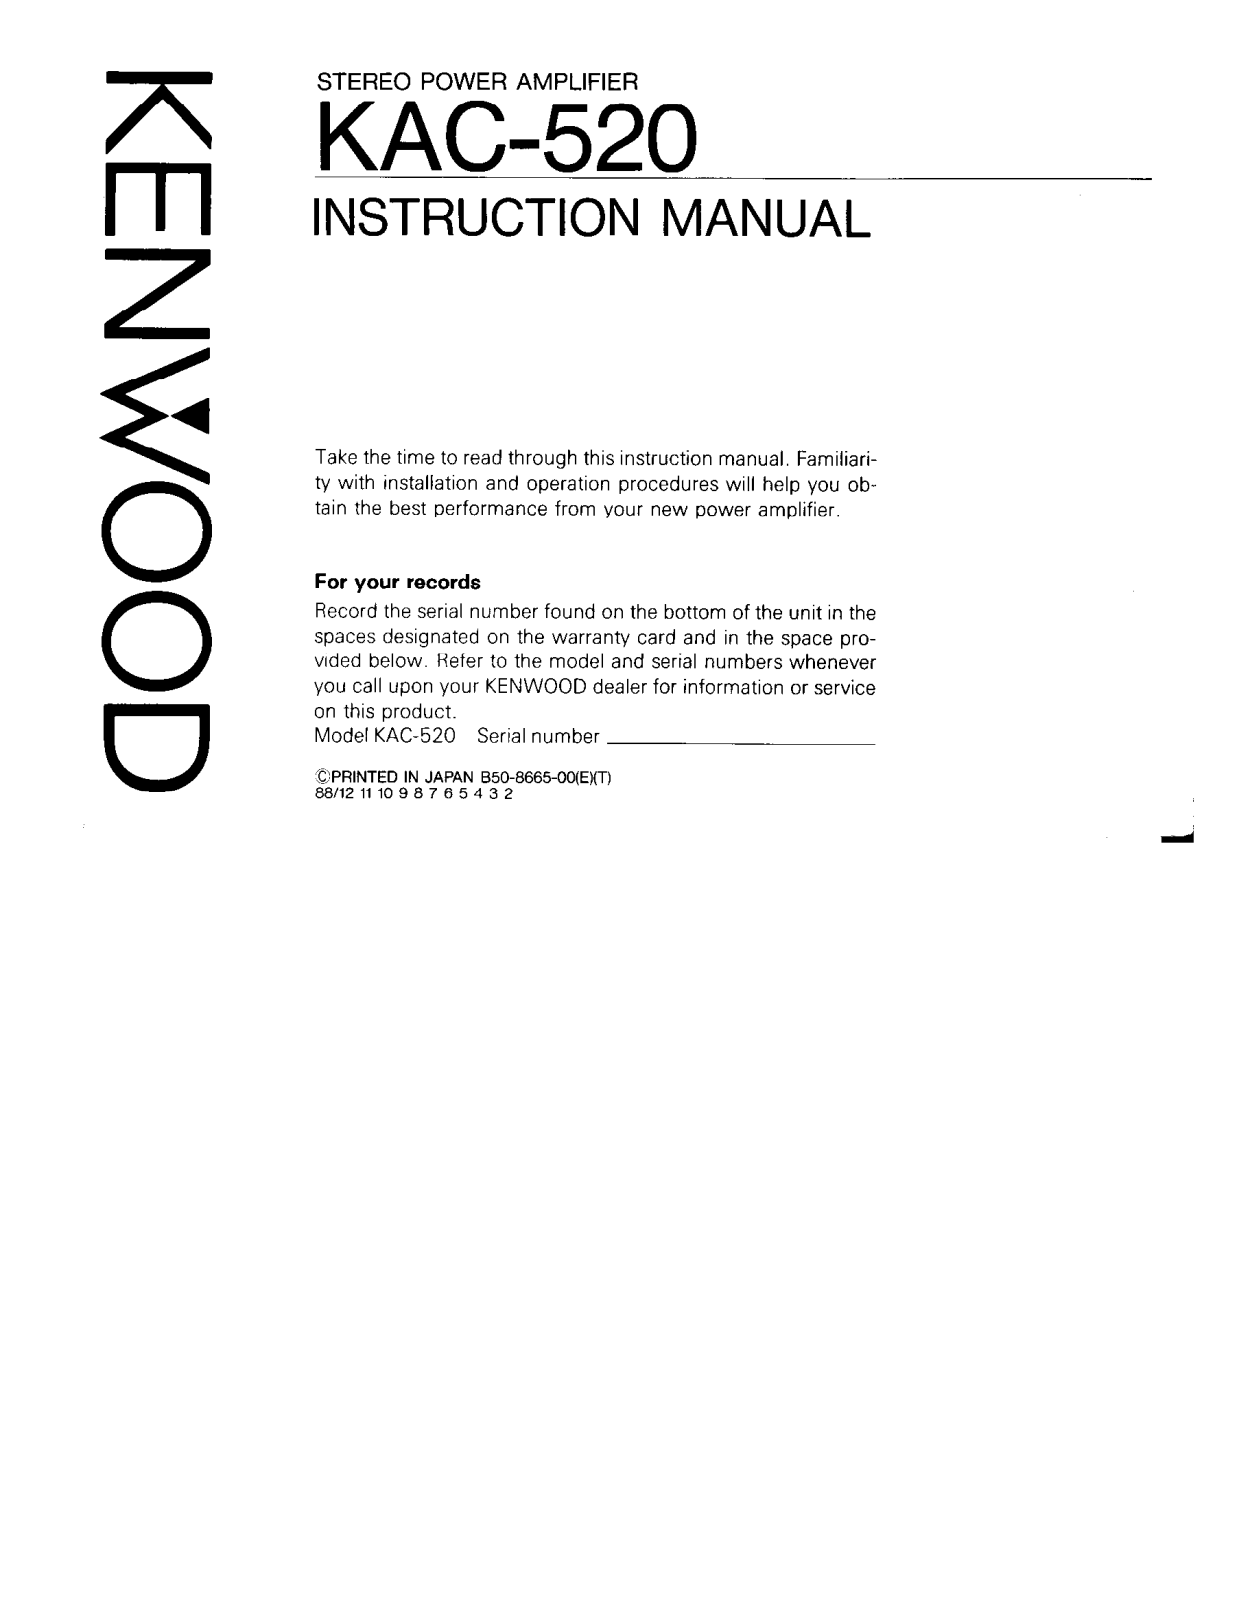 Kenwood KAC-520 Owner's Manual